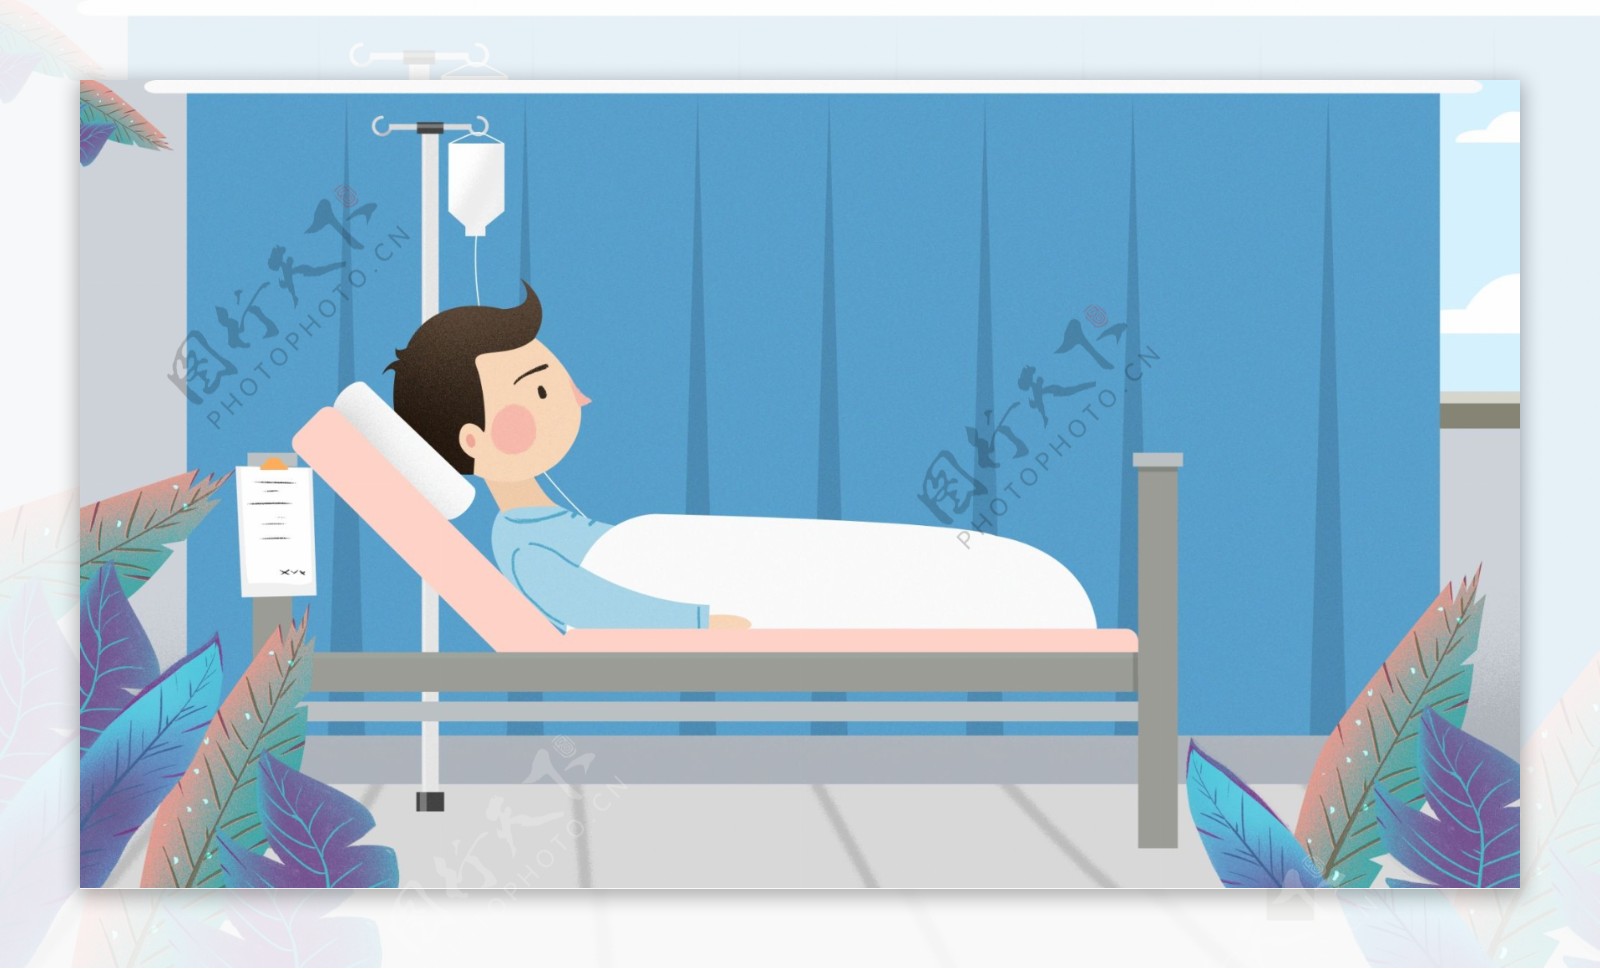 躺在病床上的输液的病人卡通背景